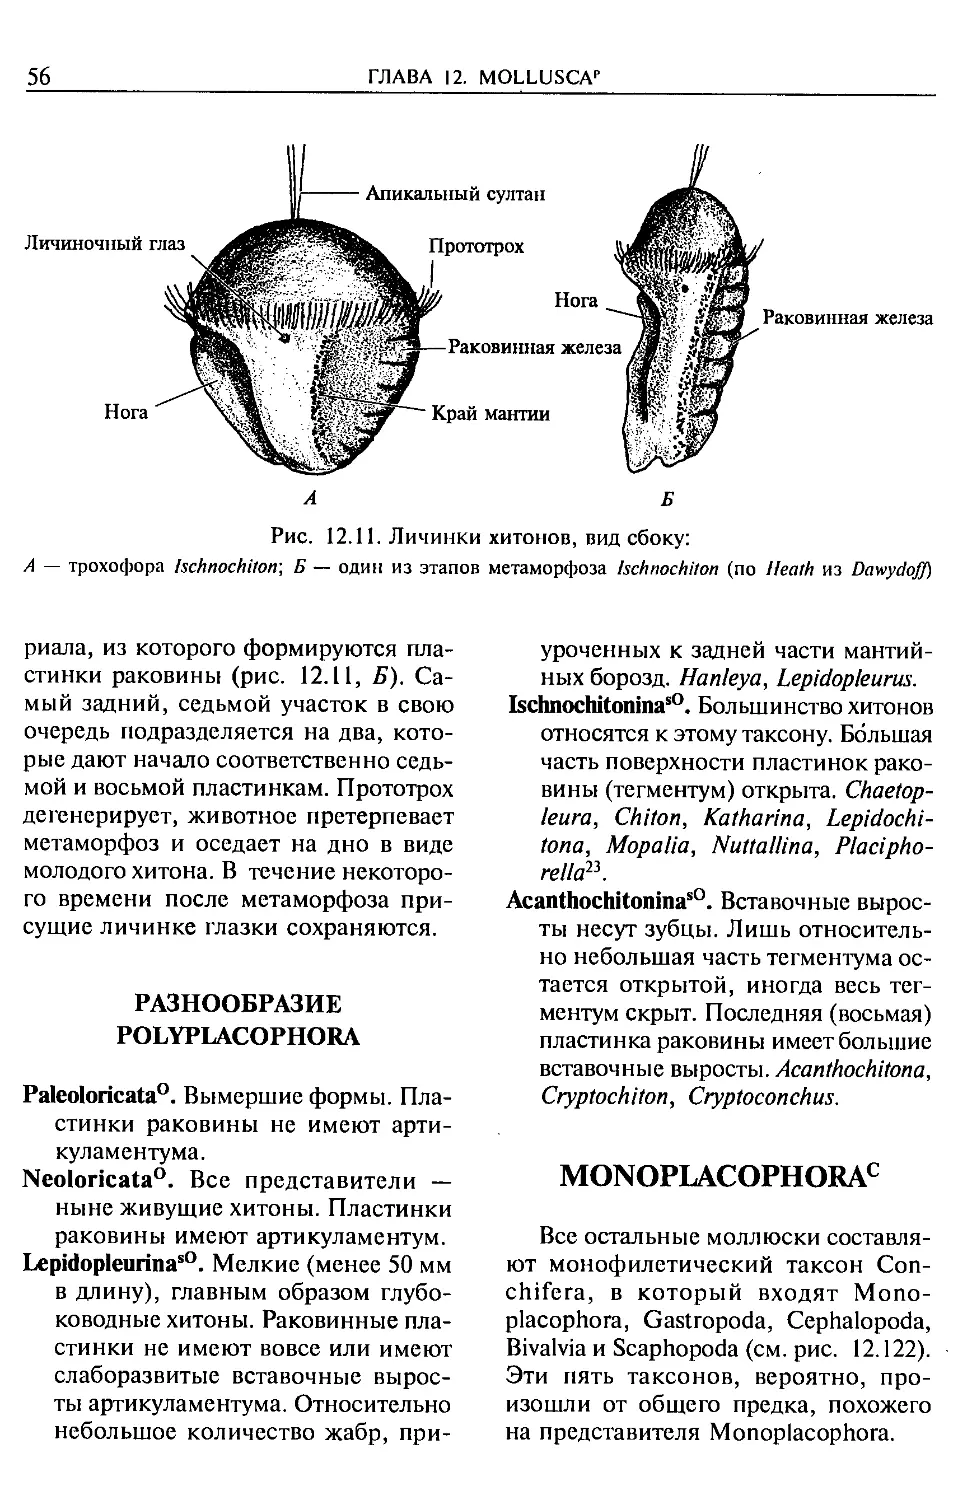 Разнообразие Polyplacophora
Monoplacophora